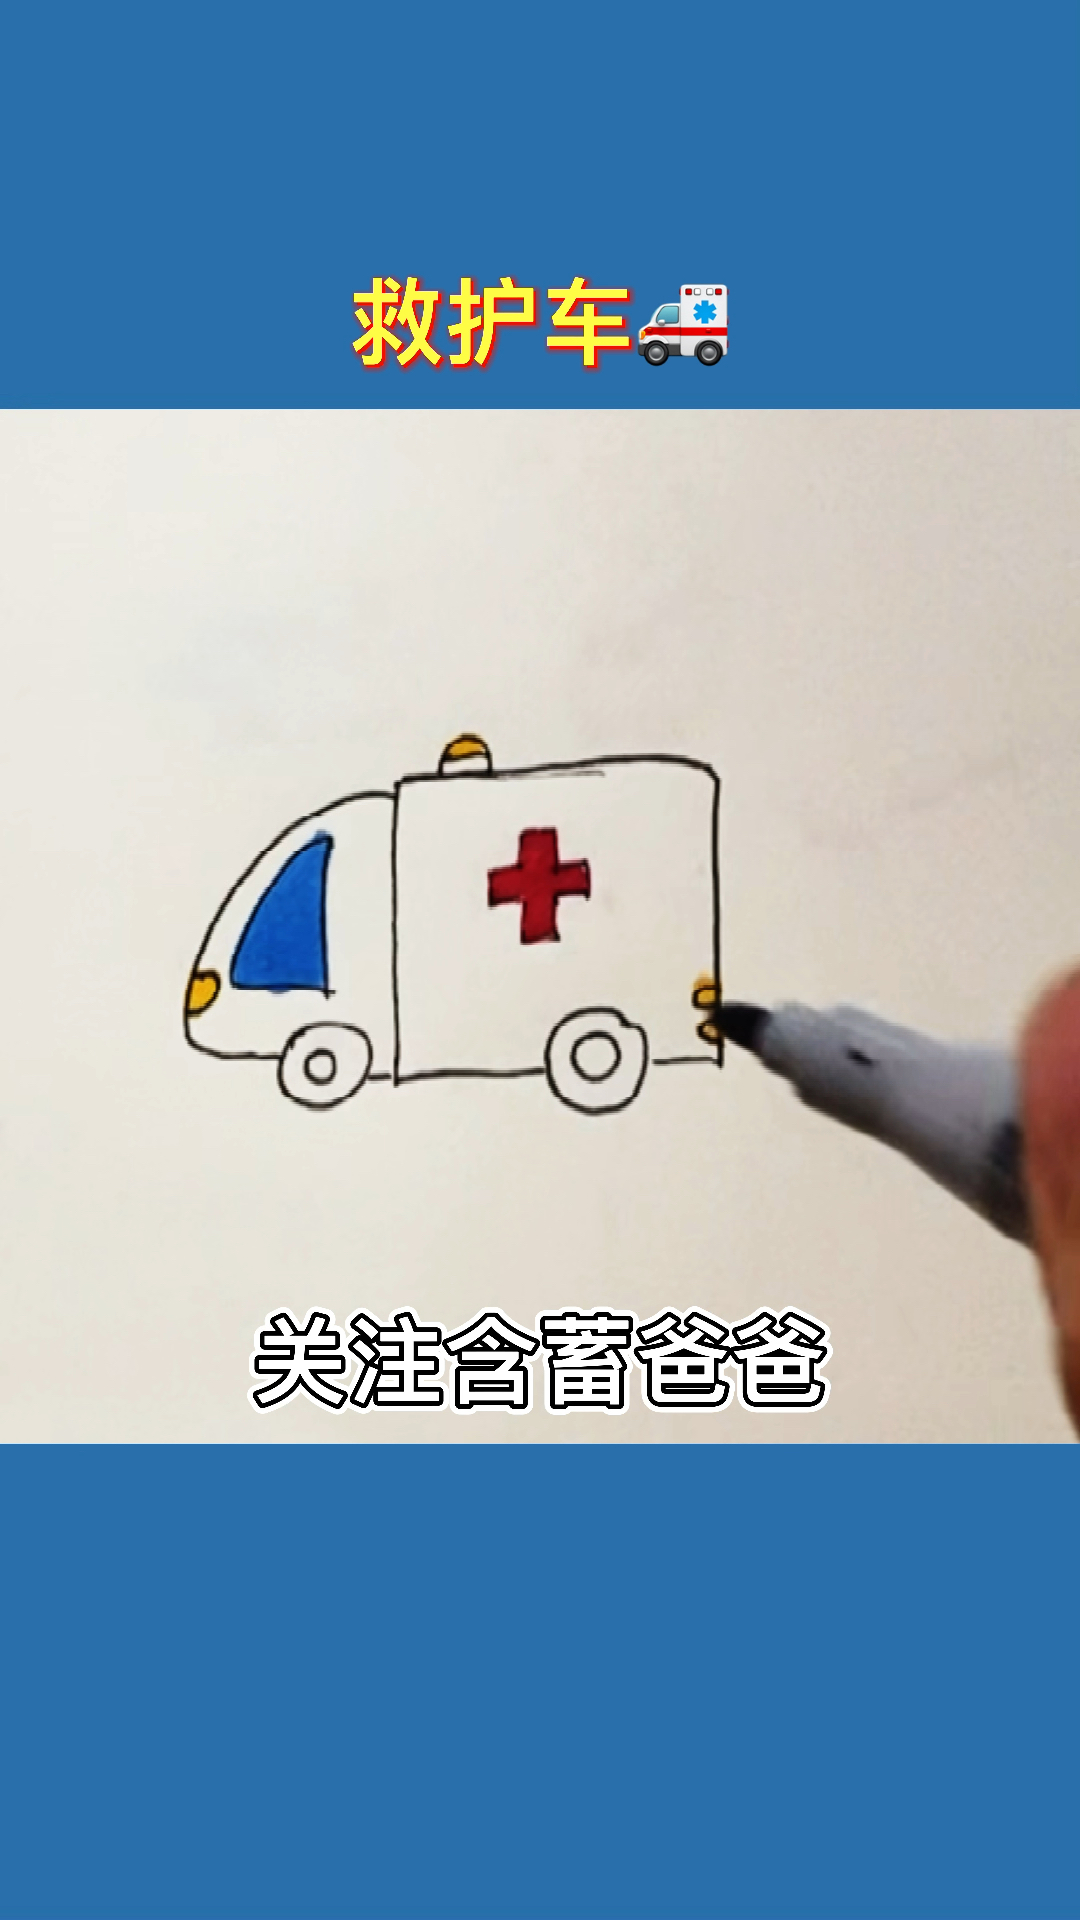 简笔画画个救护车复杂的画画简单化一起和含蓄爸爸画起来吧